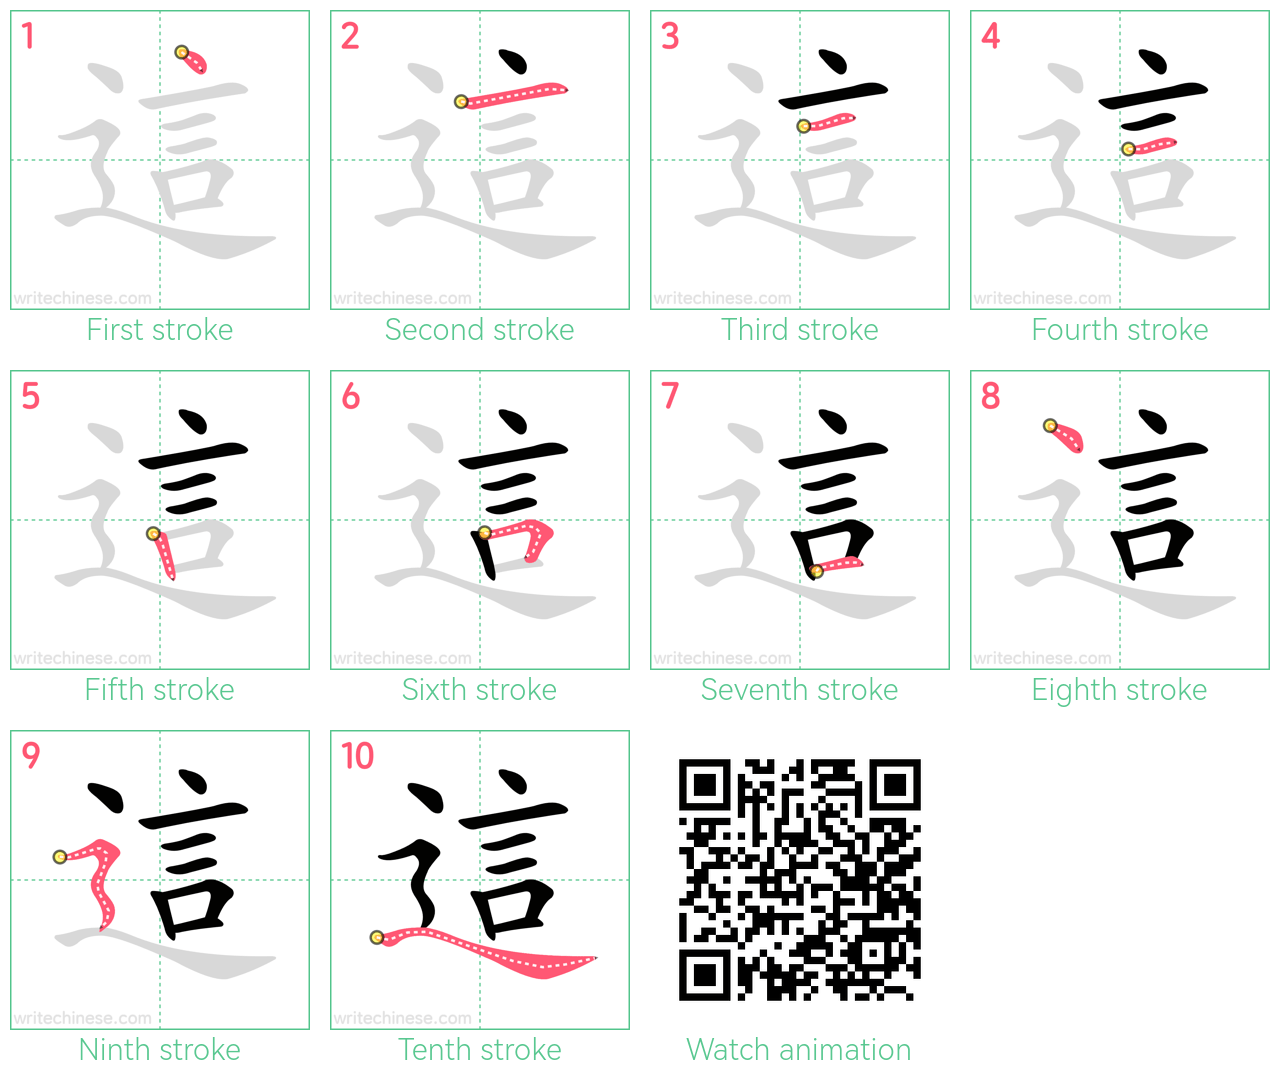 這 step-by-step stroke order diagrams